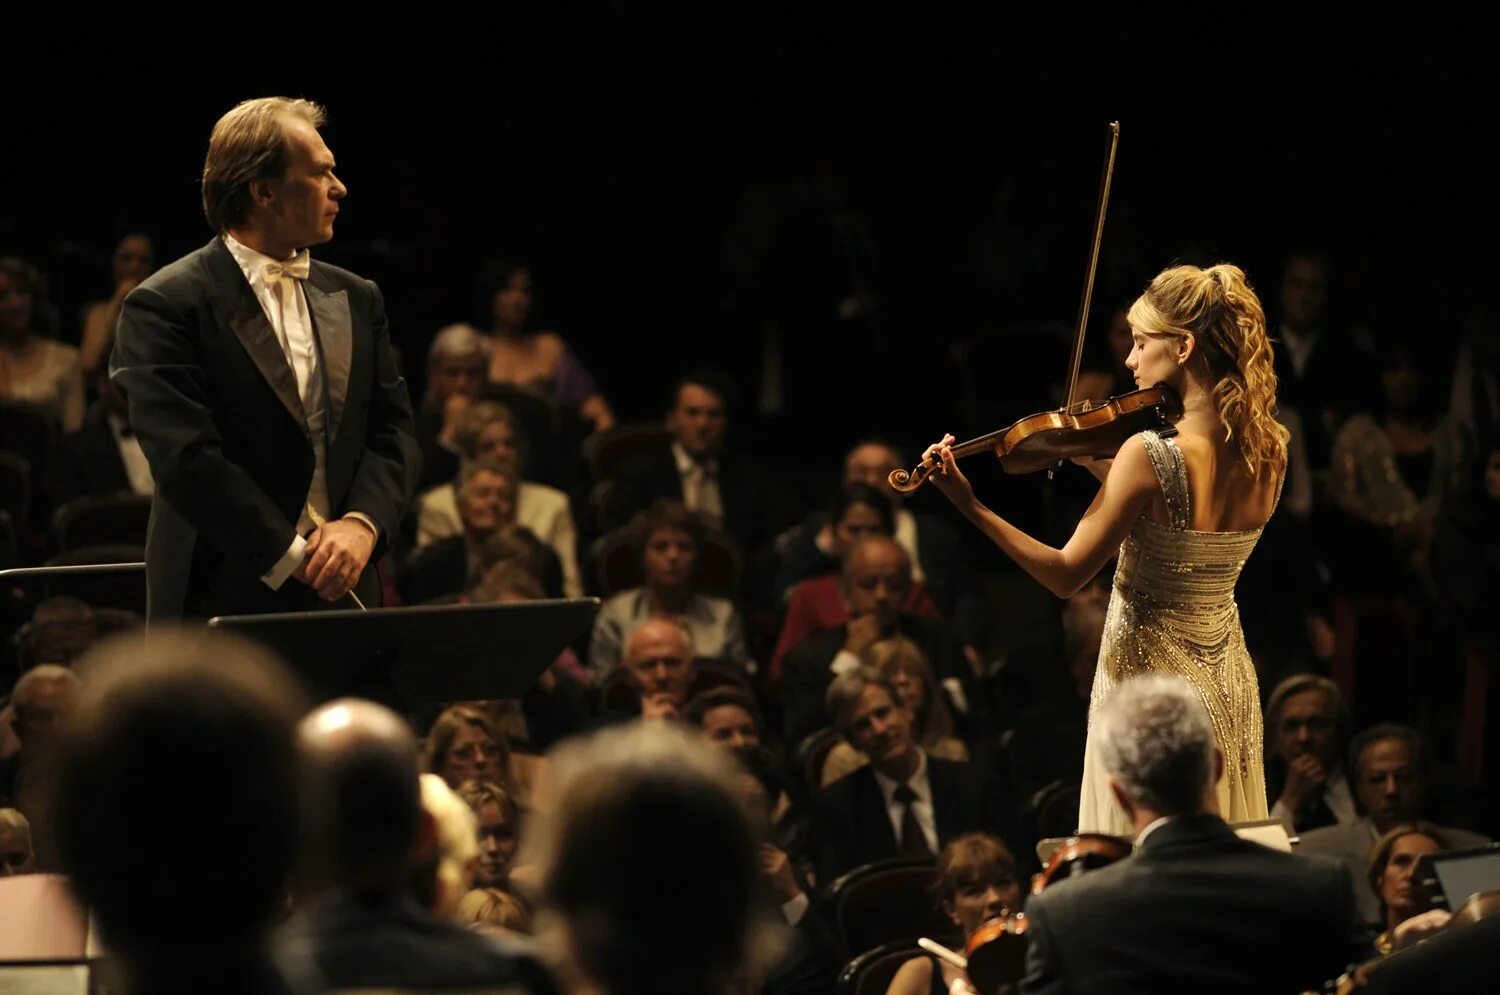 Концерты скрипачки. Melanie Laurent. Концерт (2009). Зрители на концерте классической музыки. Музыкант на сцене и зрители.